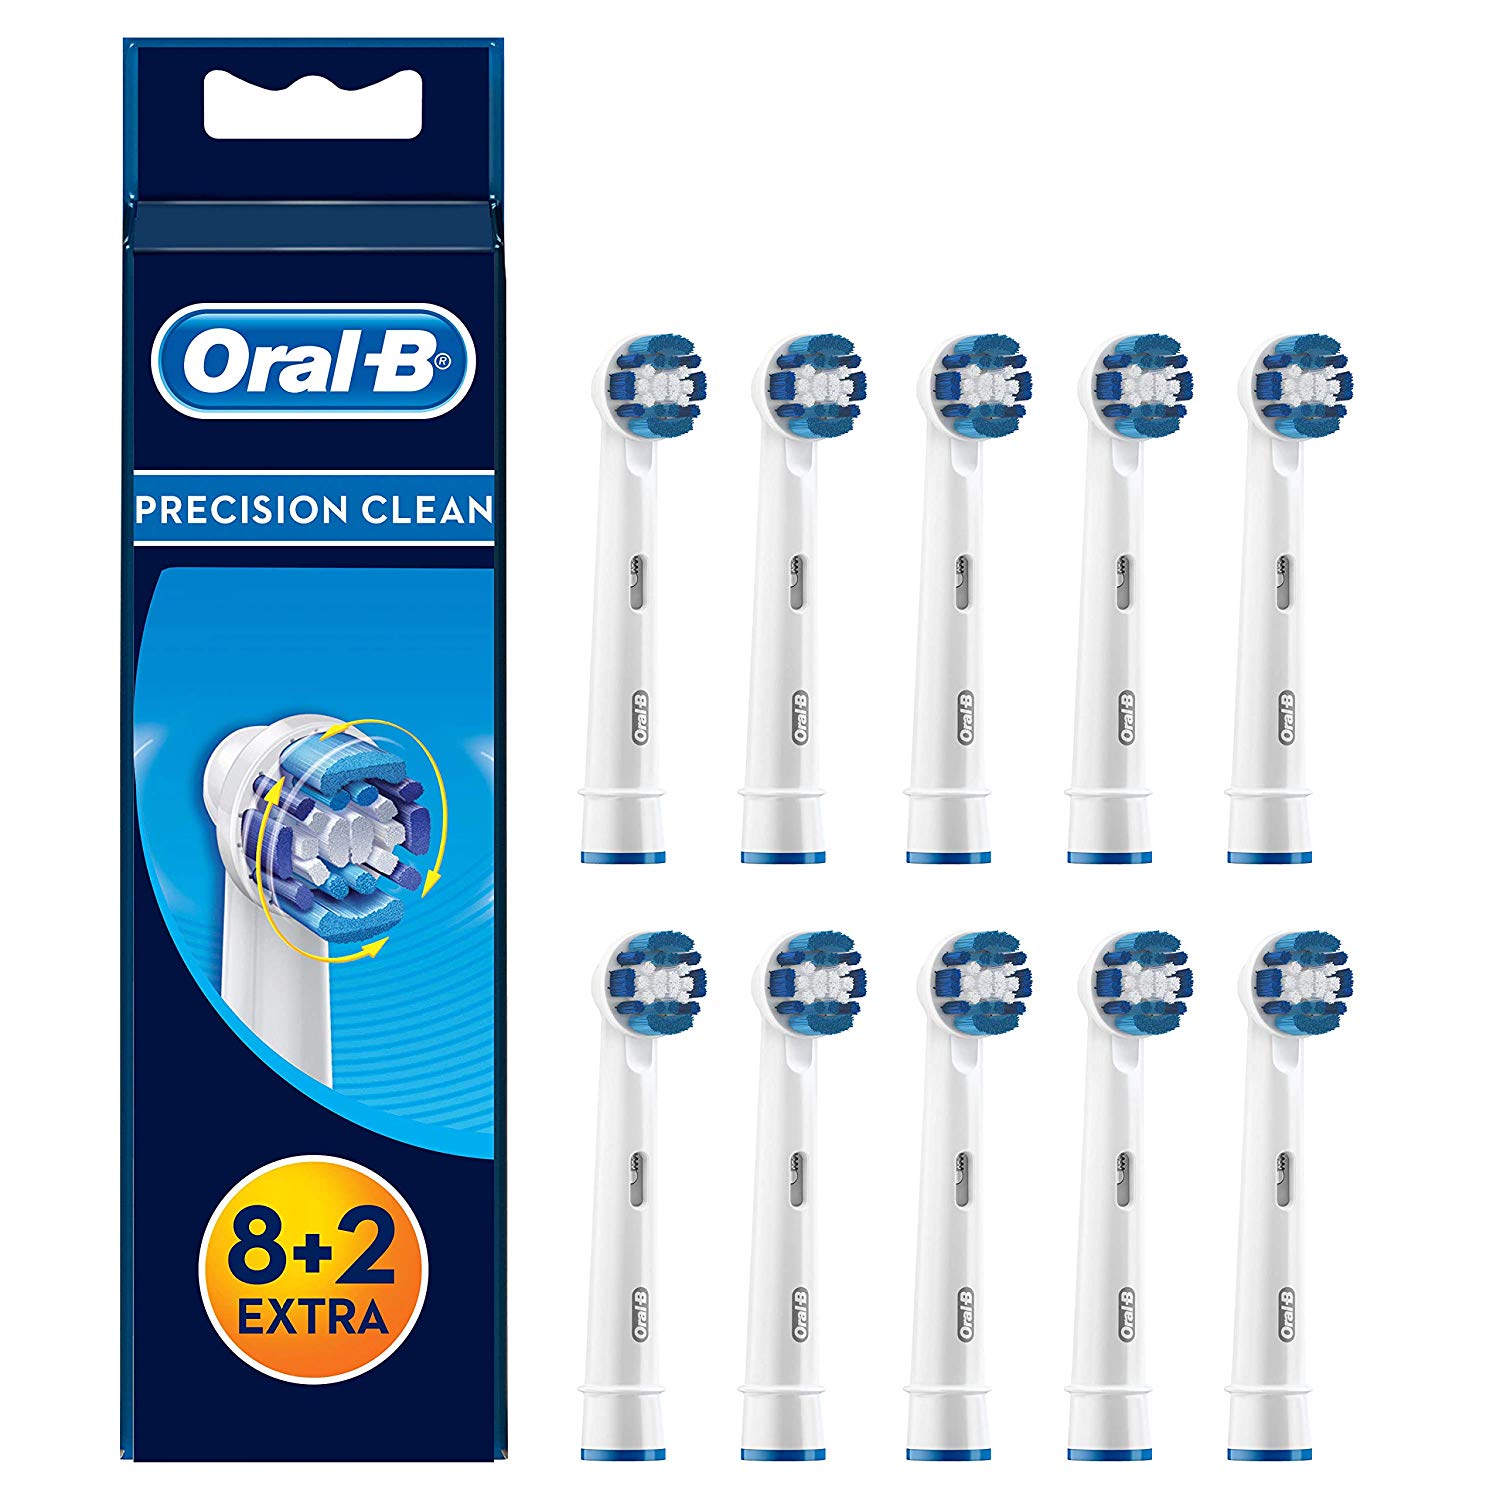 欧乐BEB20电动牙刷头10支装凑单含税到手165.86元